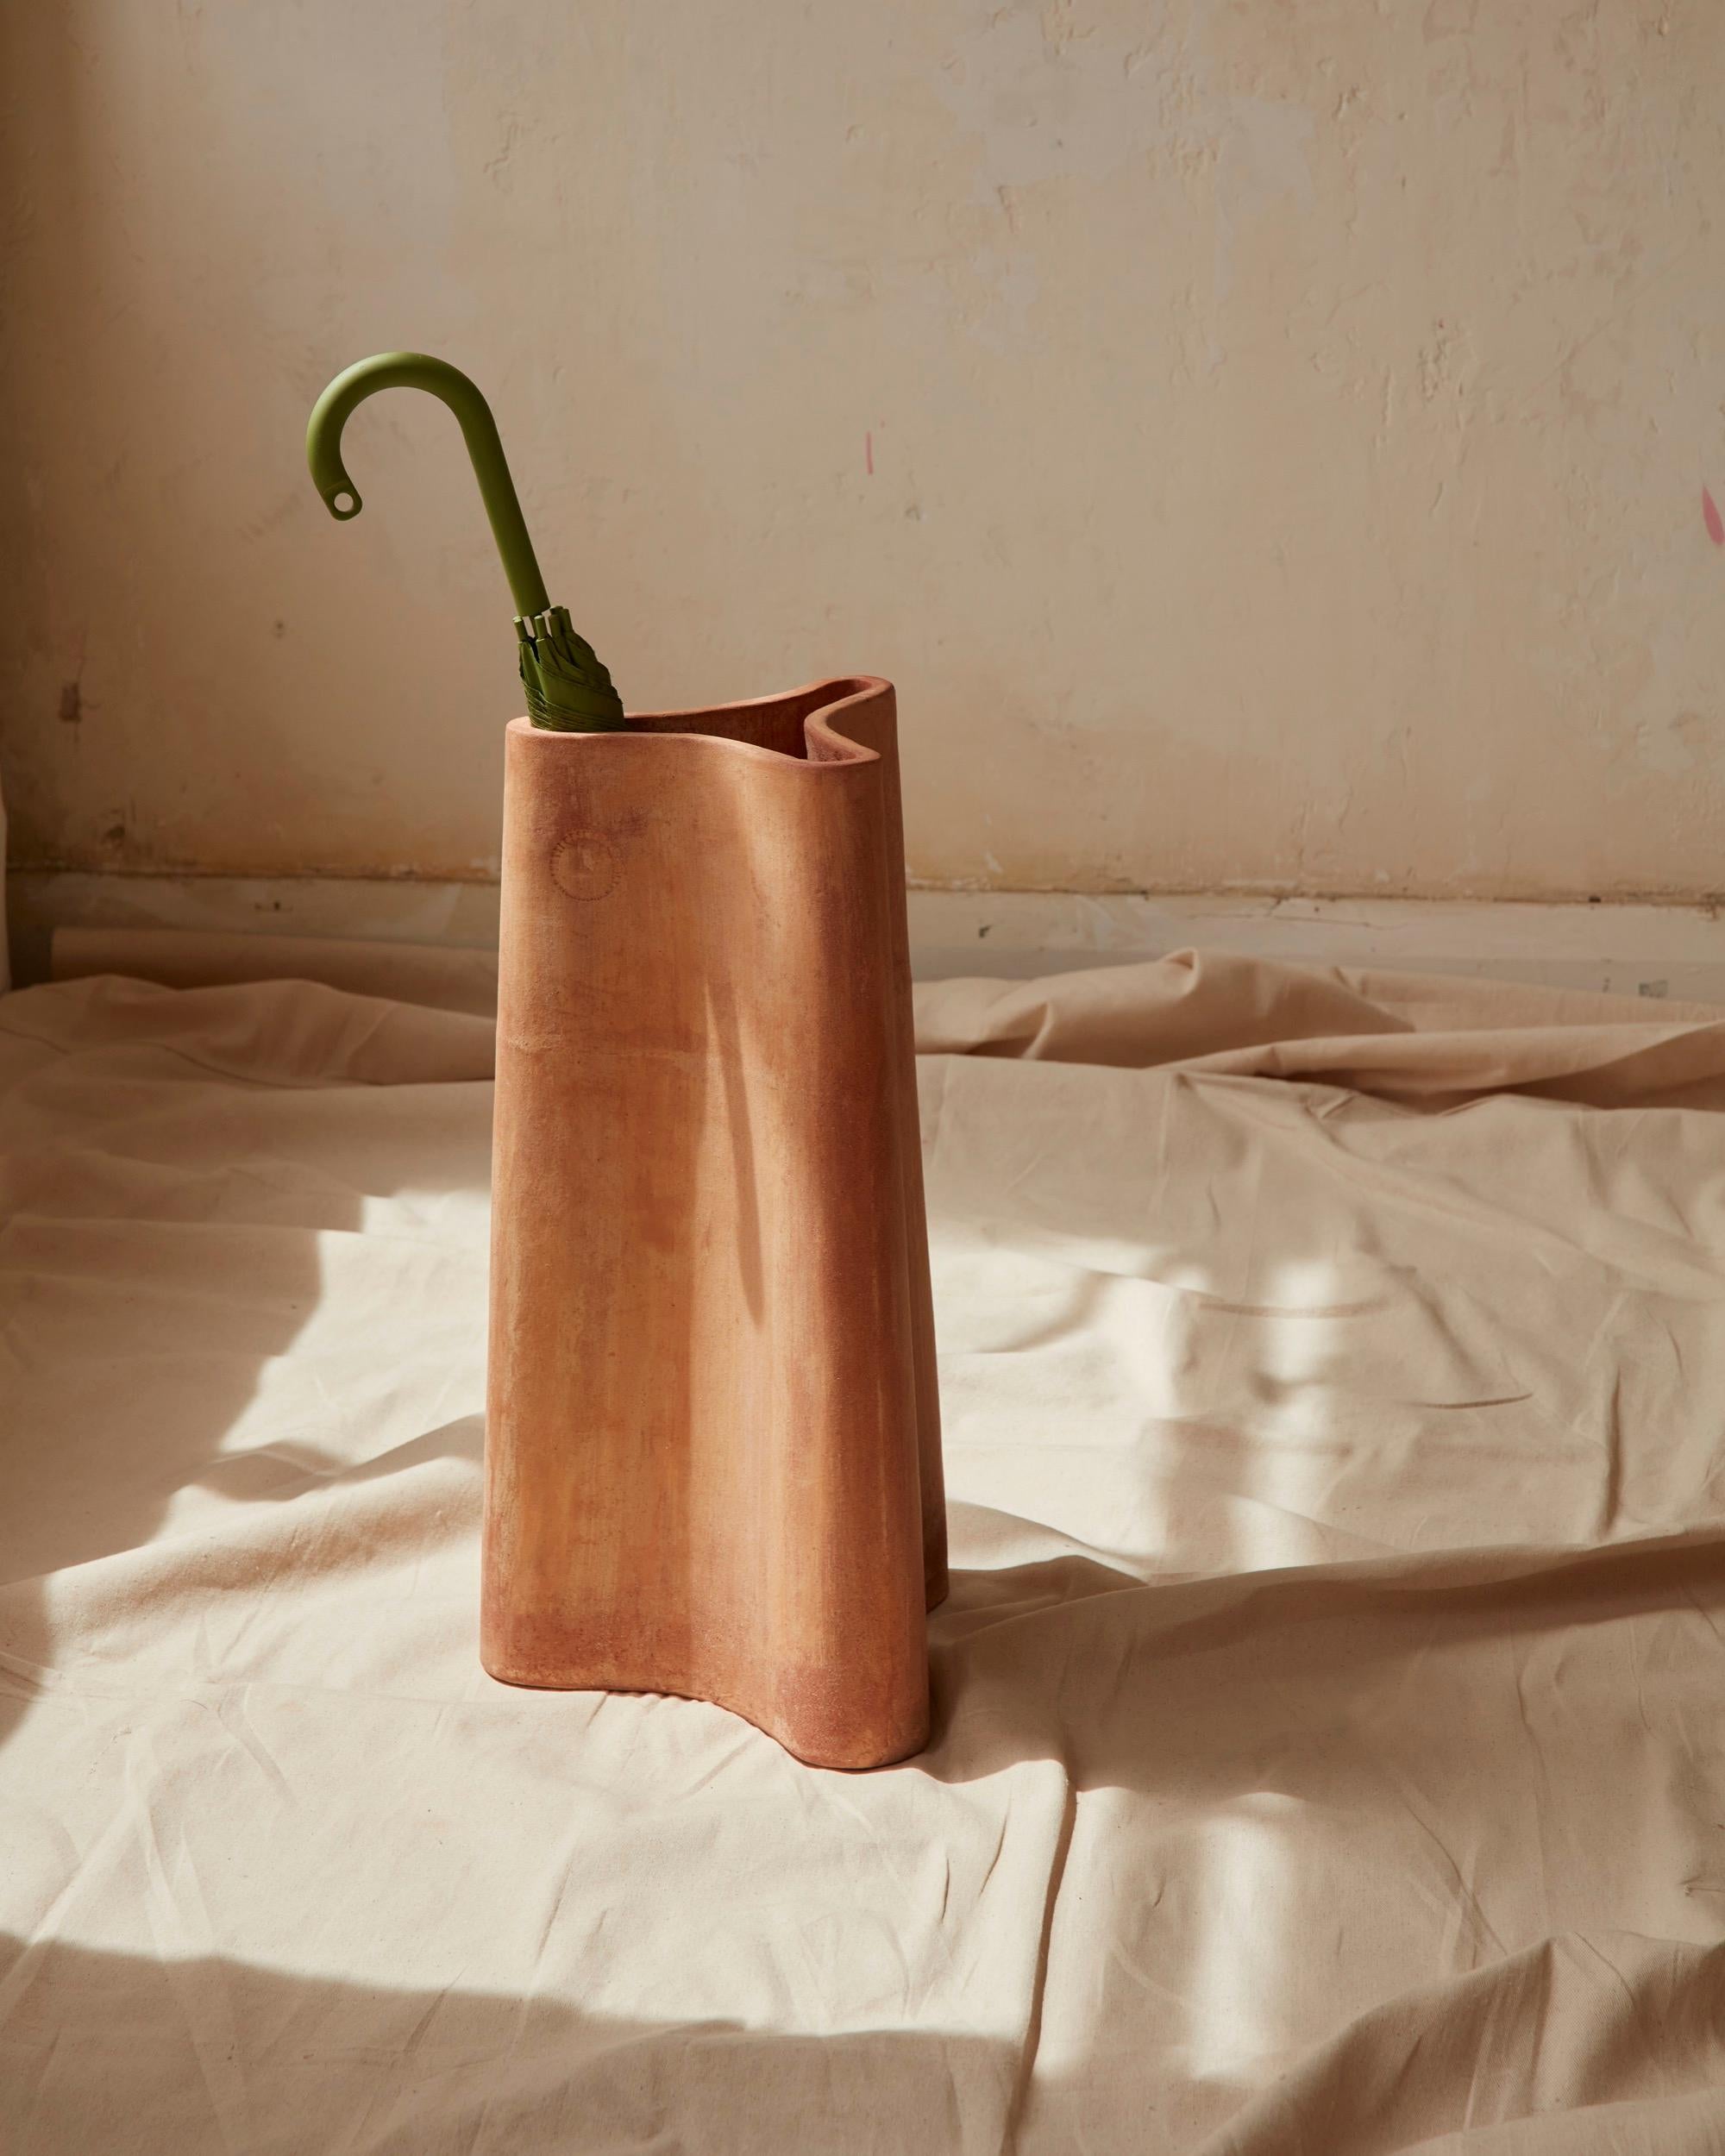 Un porte-parapluie en terre cuite, inspiré par les jarres à huile et à eau de la Grèce. La forme en trois parties, semblable à un compartiment, est effilée pour la stabilité et nervurée pour la résistance.

La gamme comprend un vase plus petit,